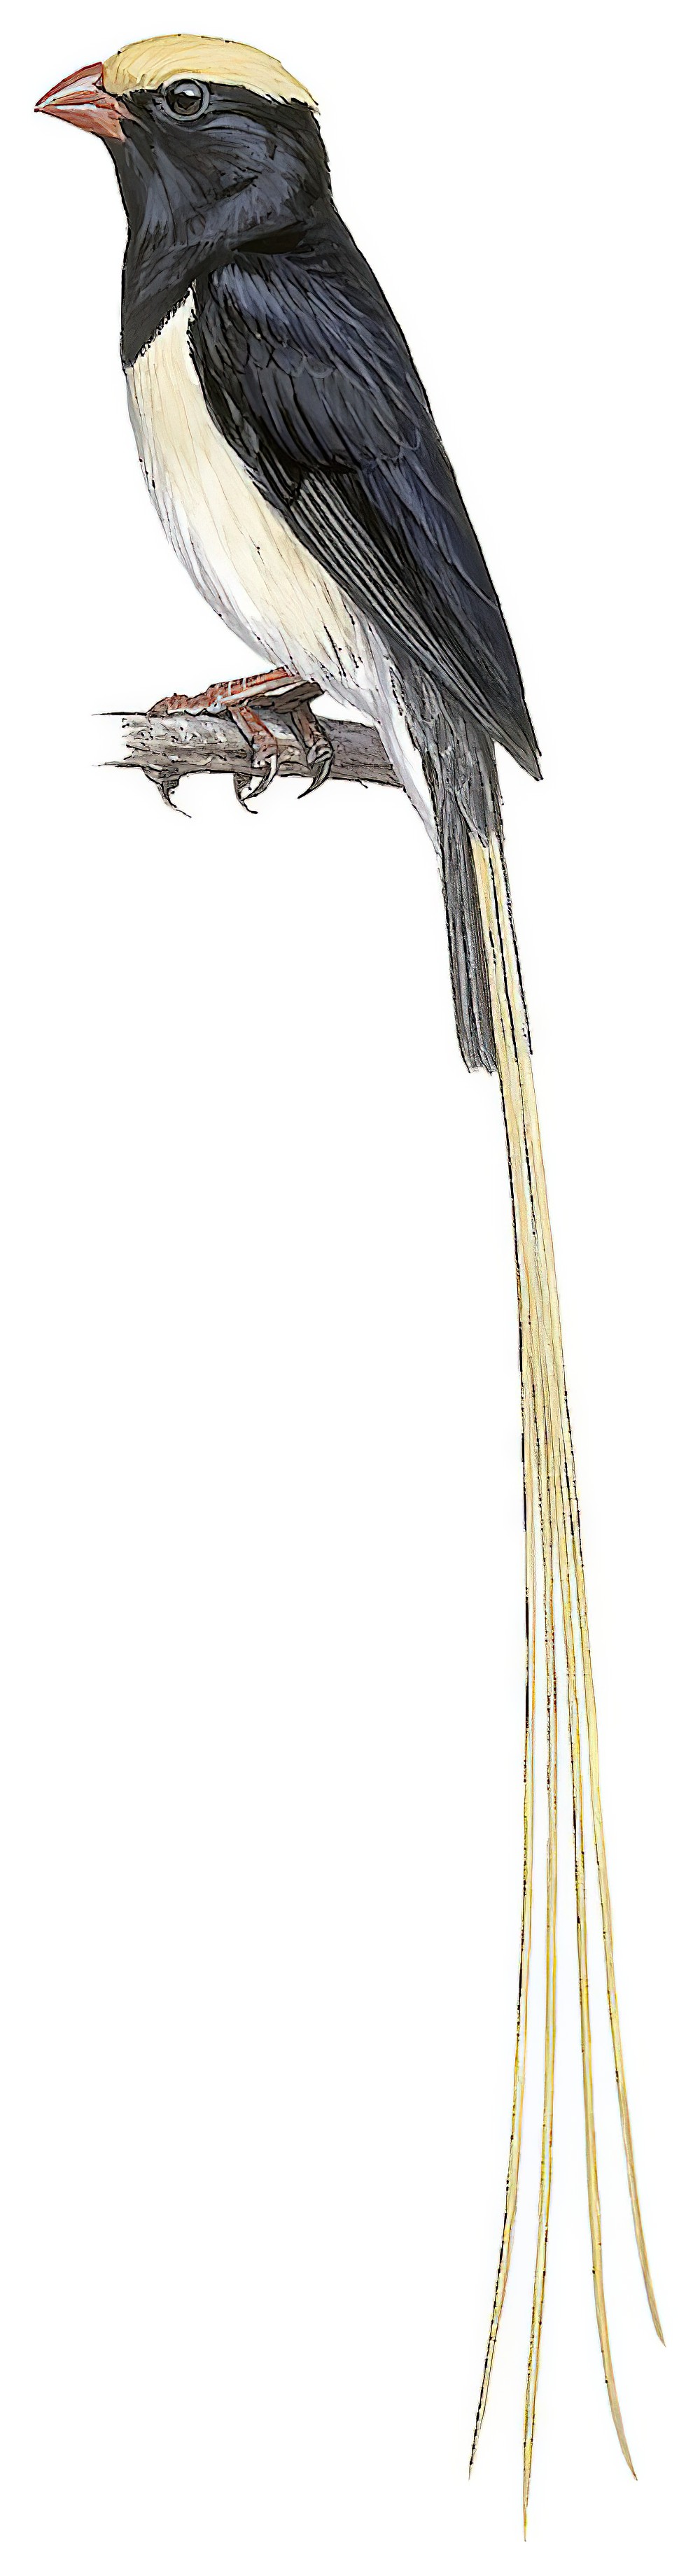 Straw-tailed Whydah / Vidua fischeri